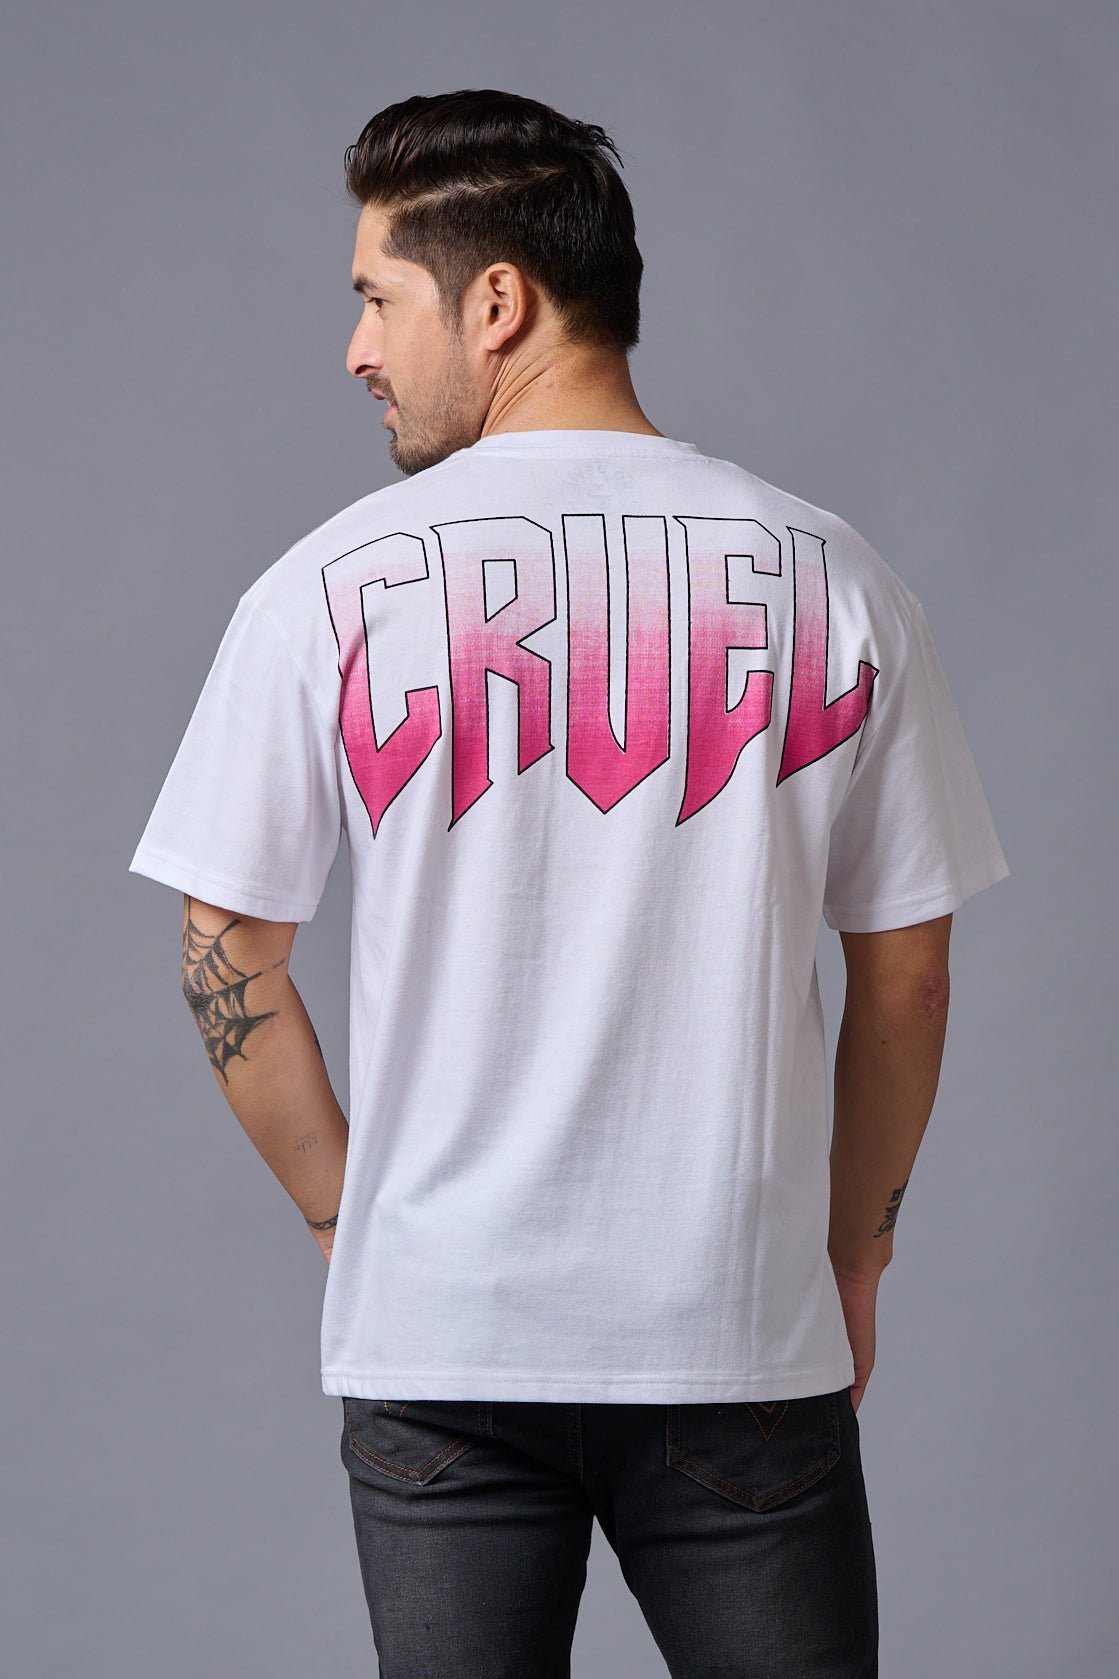 Cruel (in Gradient) Printed White Oversized T-Shirt for Men - Go Devil